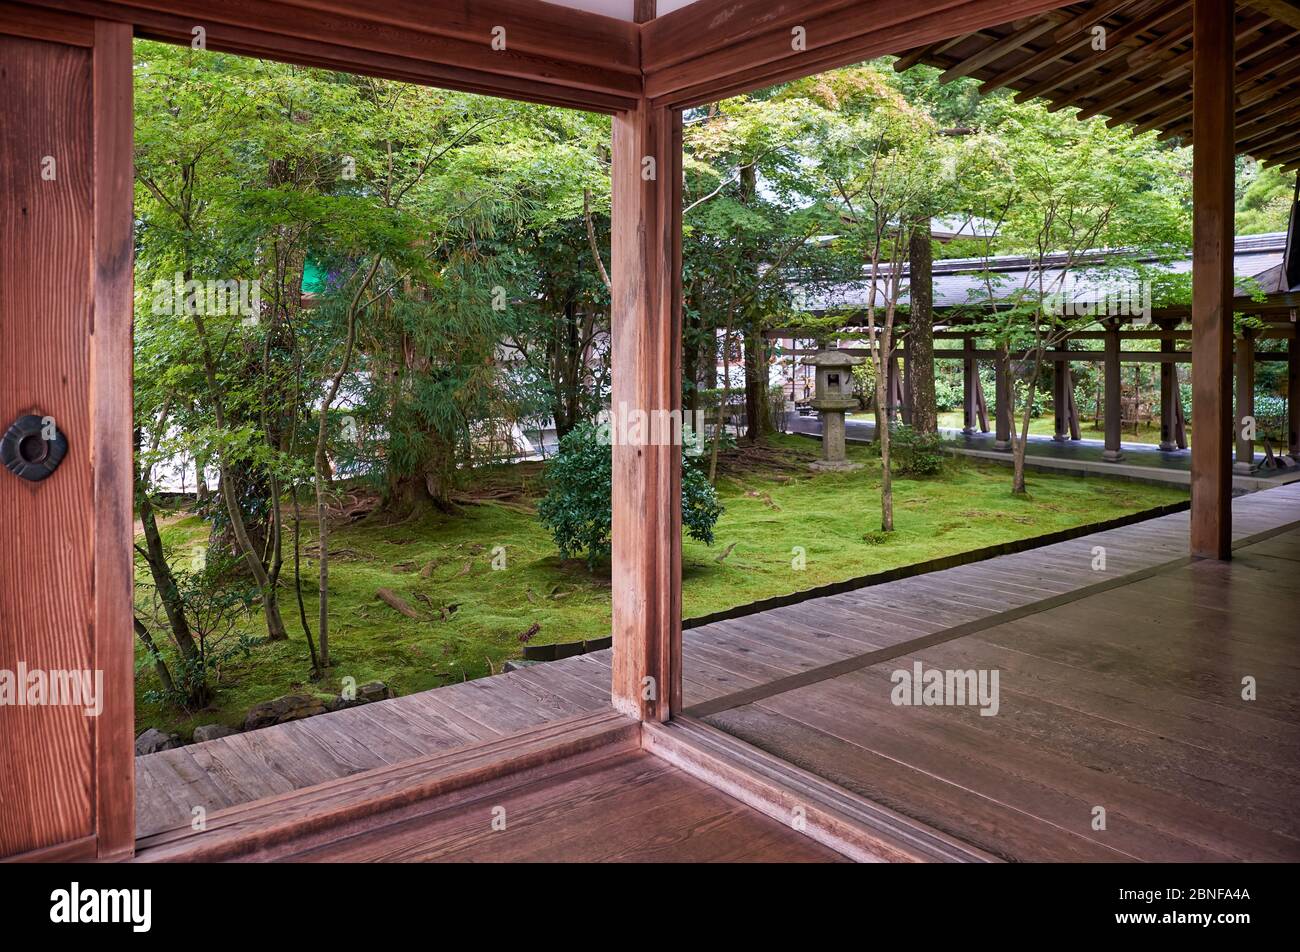 KYOTO, GIAPPONE - 17 OTTOBRE 2019: La vista dalla terrazza al piccolo giardino sul retro dell'Hojo, l'ex residenza del prete di Ryo Foto Stock